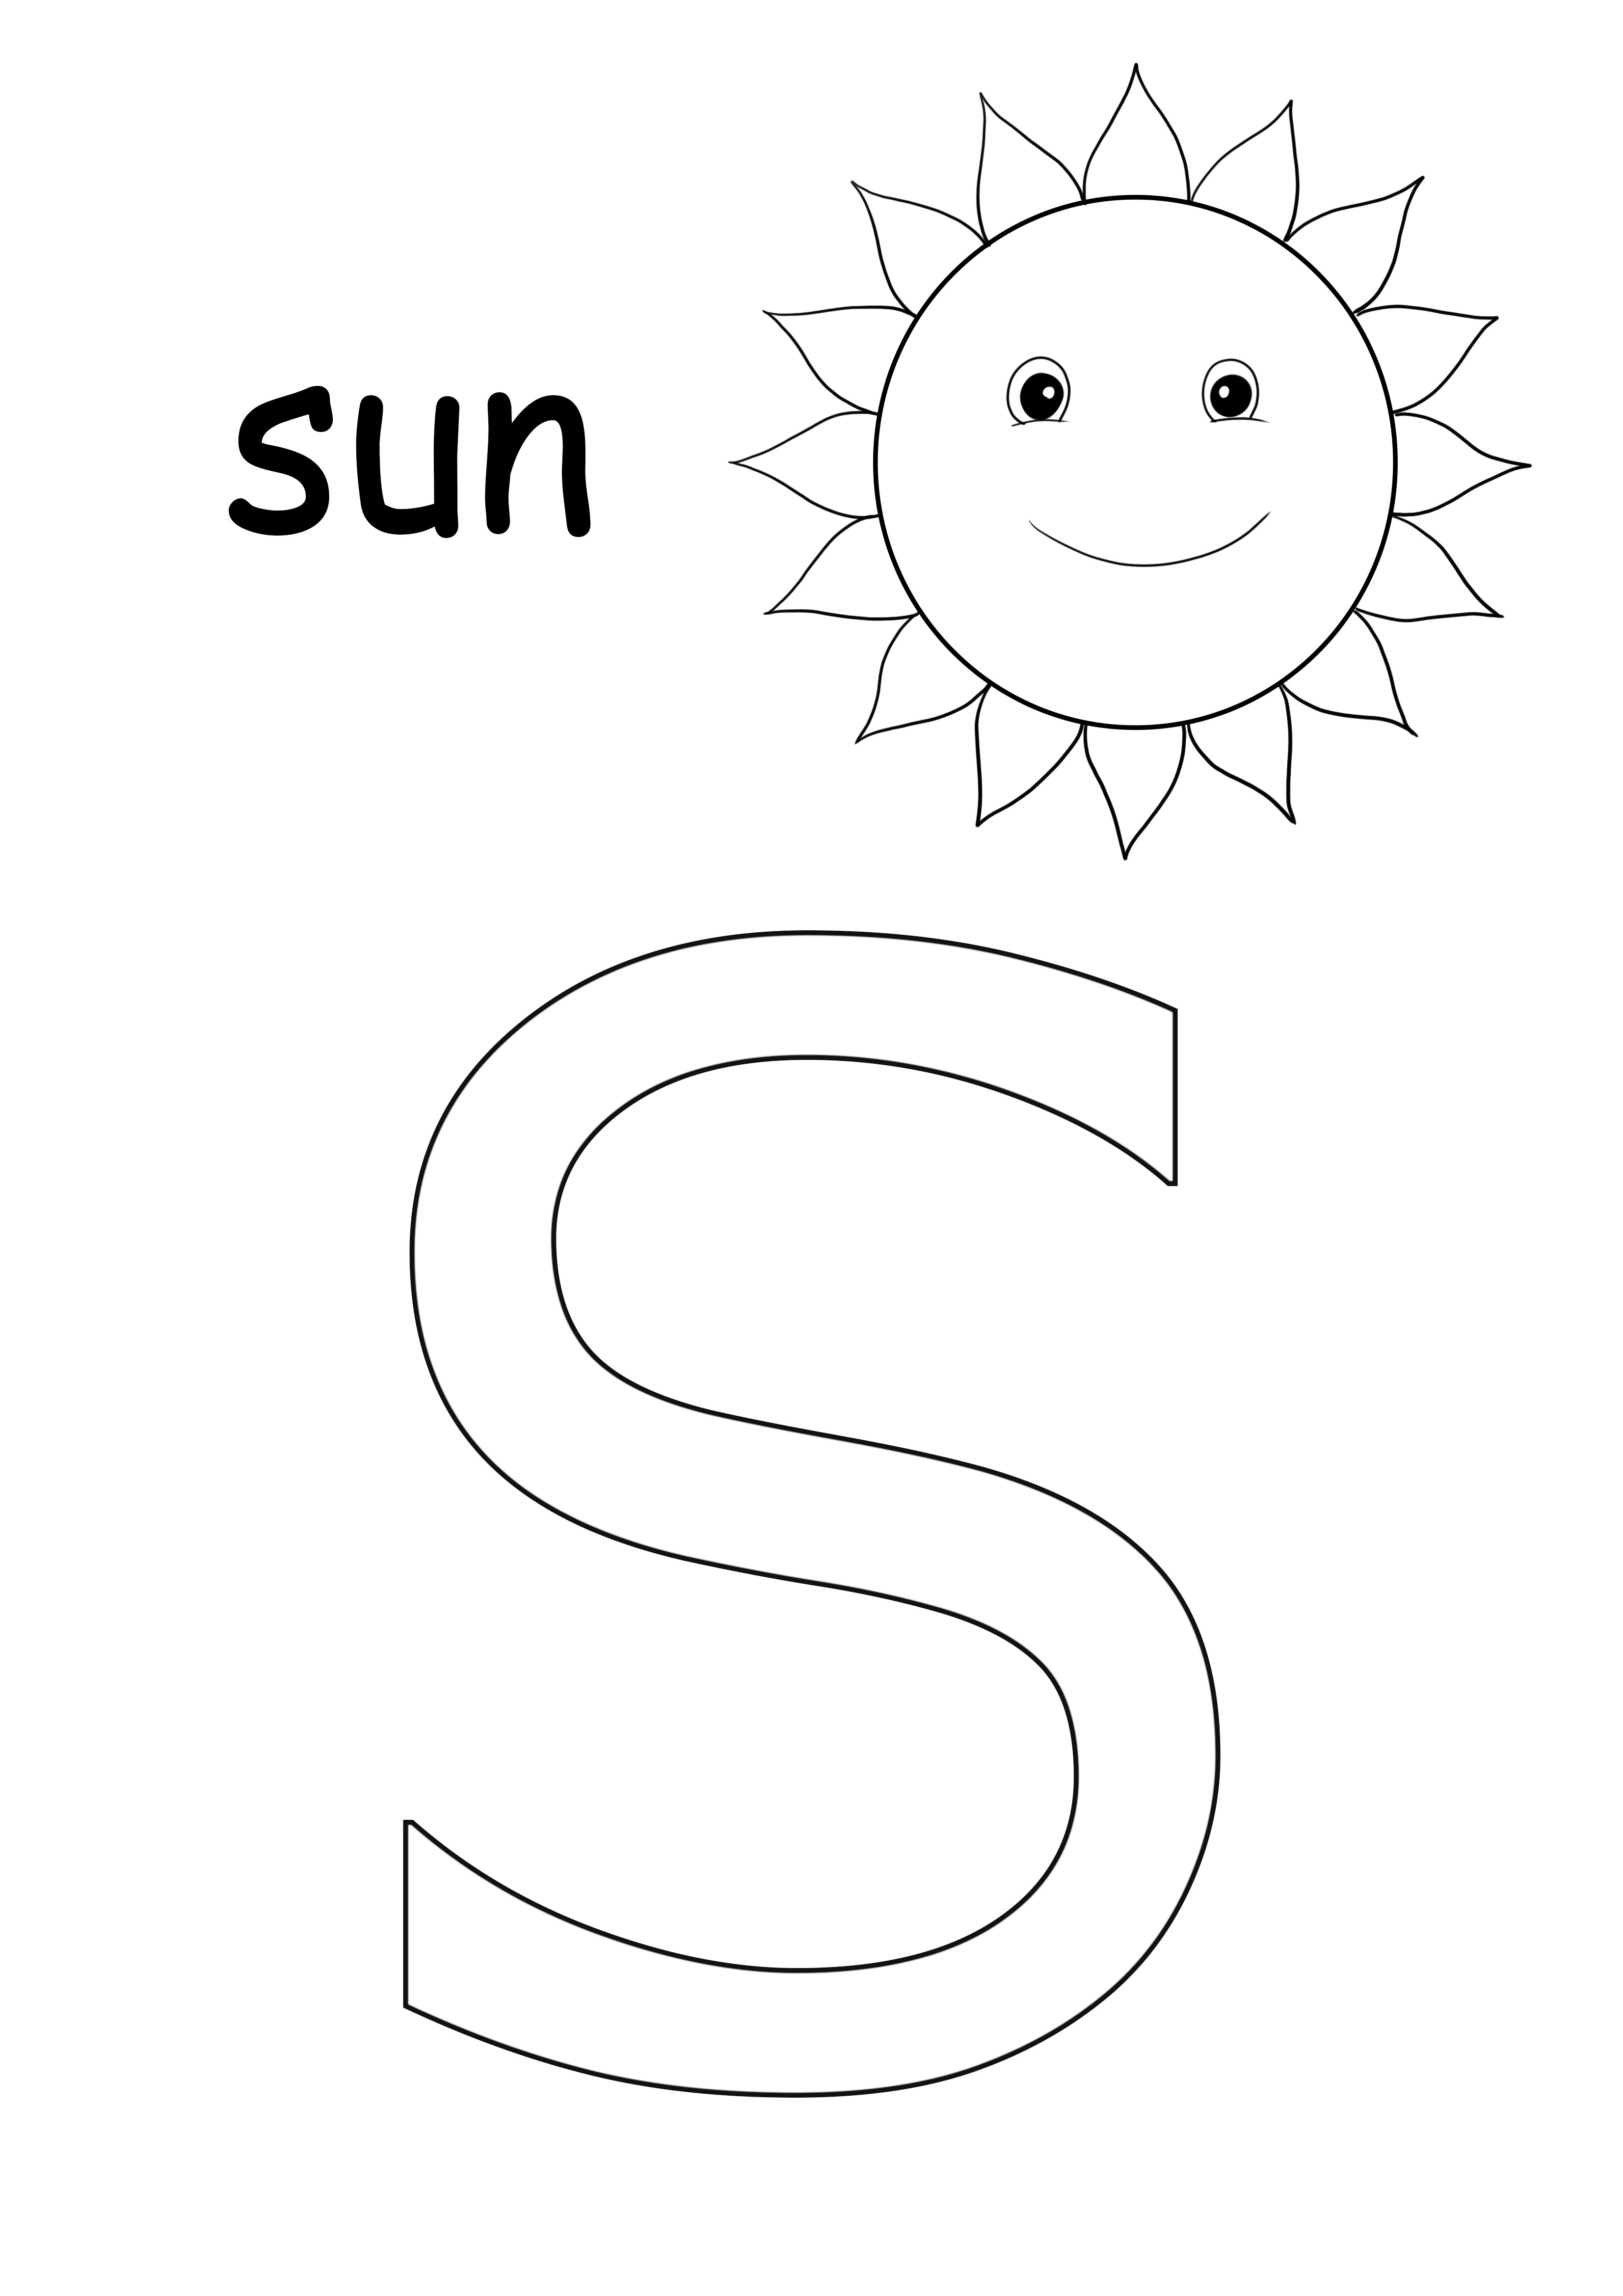 S, ücretsiz ve renkli yazdırmak için güneş boyama sayfası içindir